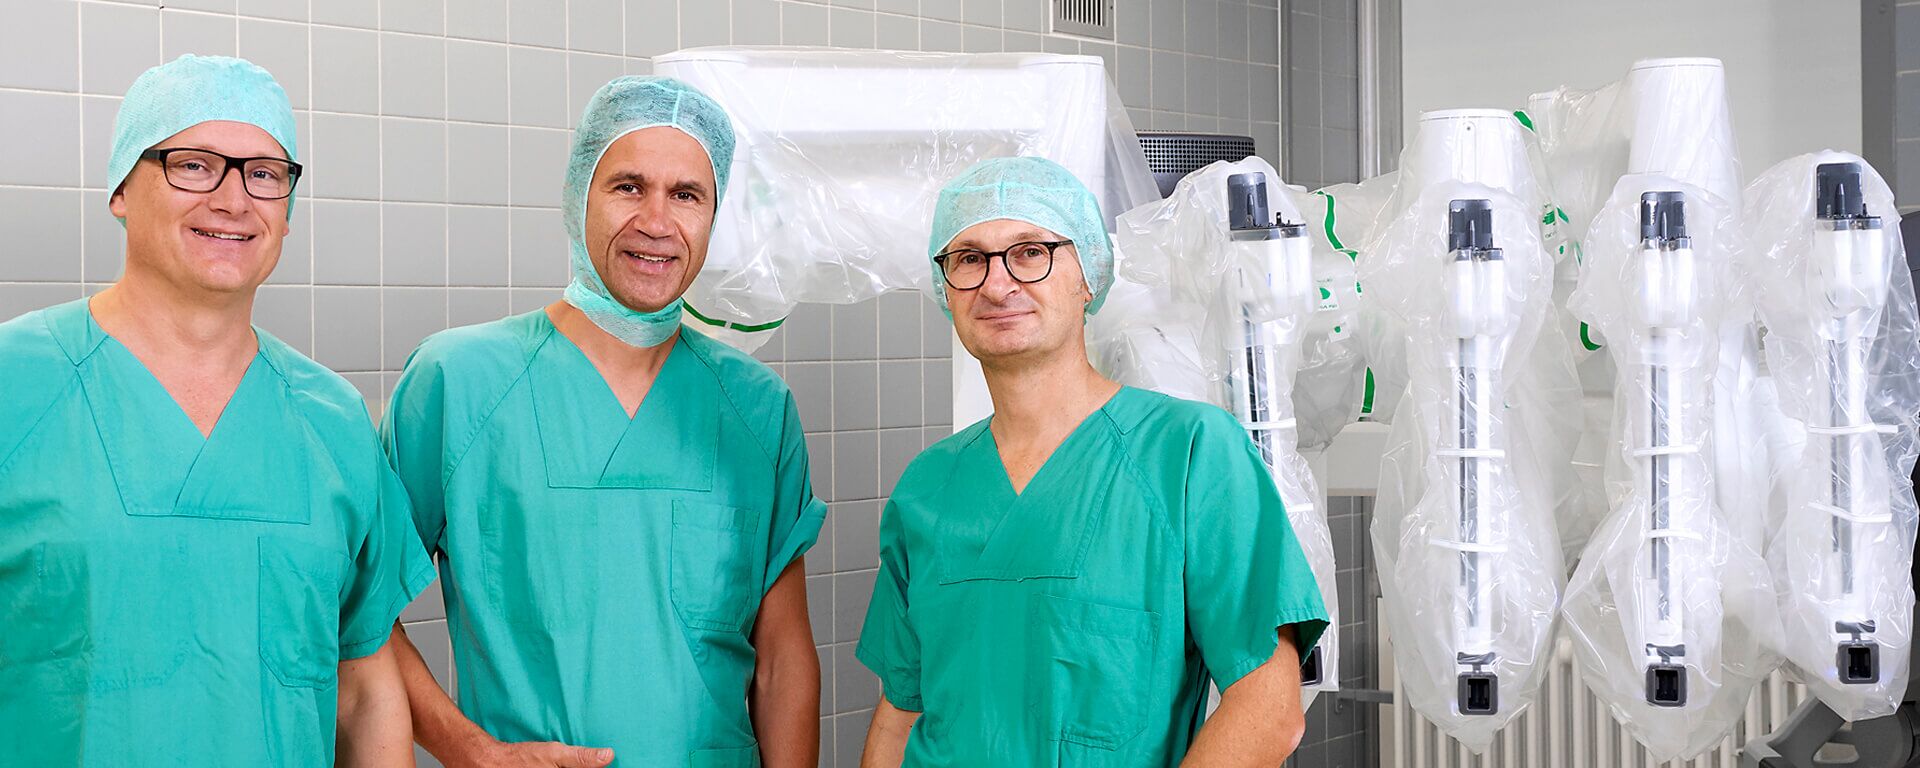 Foto: Dr. Hemcke, Dr. Wolters und Dr. Moormann